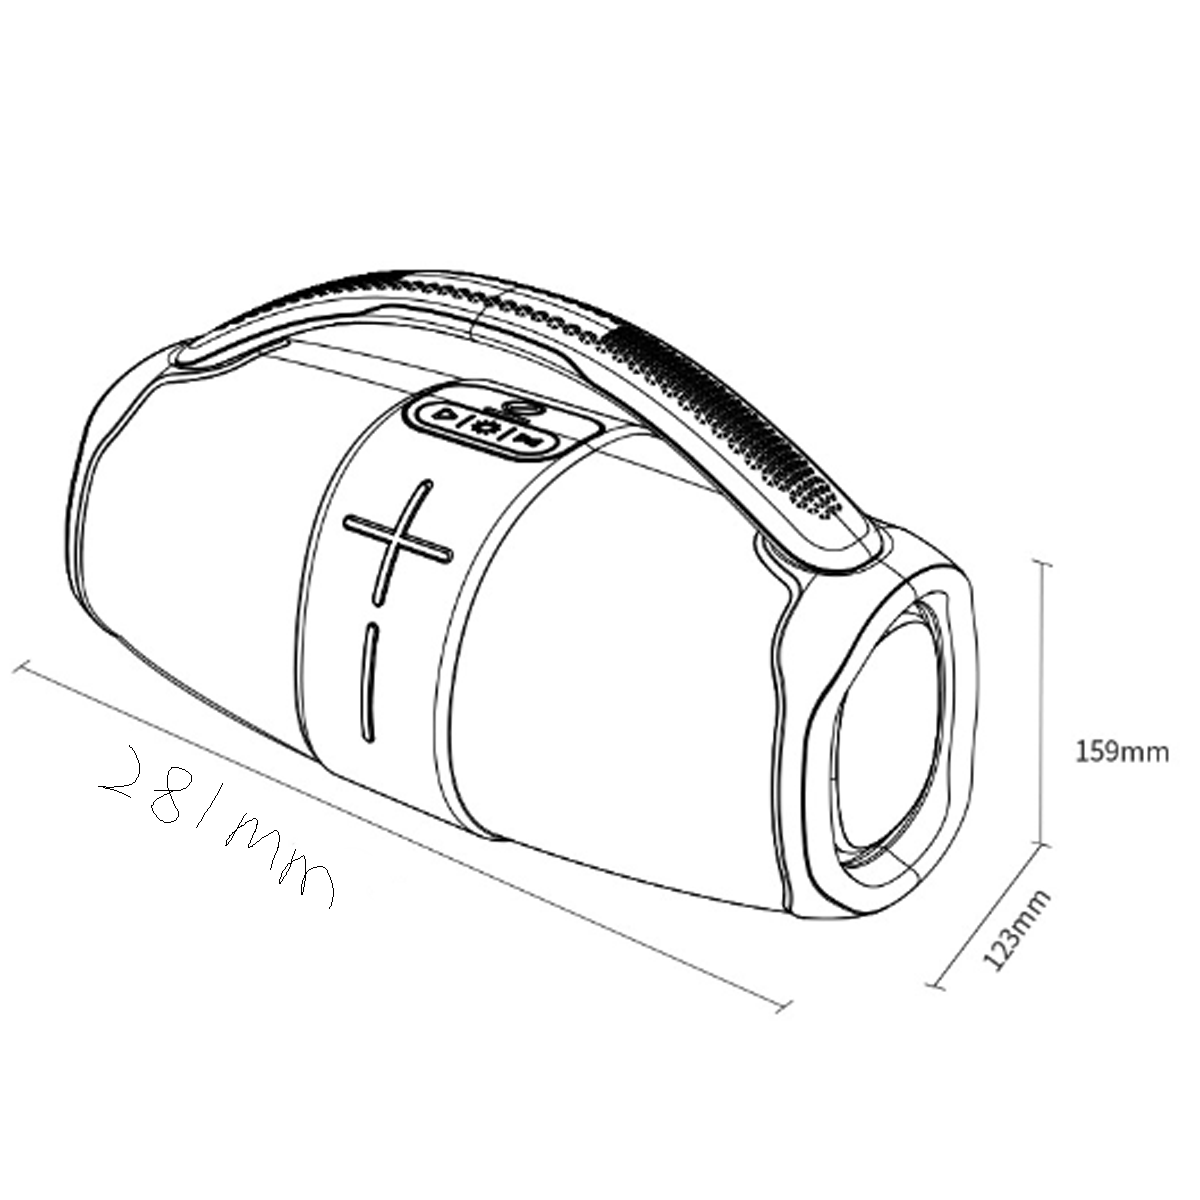 ENBAOXIN Subwoofer-Bluetooth-Lautsprecher, 7 Farben, Lichteffekt, Doppelkonnektivität TWS Orange, Wasserfest Bluetooth-Lautsprecher, Rhythmischer